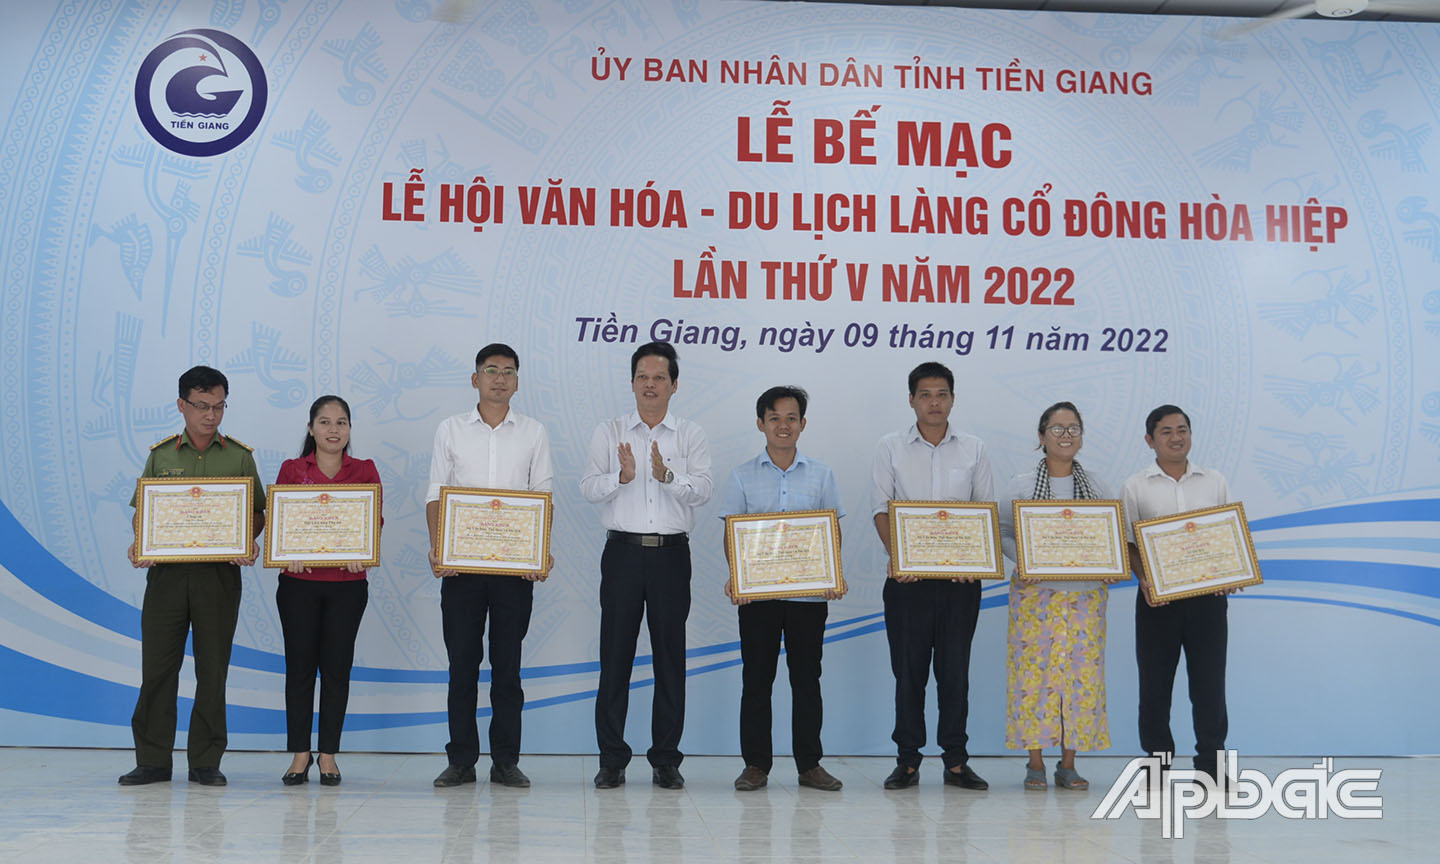 Đồng chí Nguyễn Thành Diệu trao bằng khen của UBND tỉnh cho các tập thể có thành tích xuất sắc trong công tác tổ chức Lễ hội.